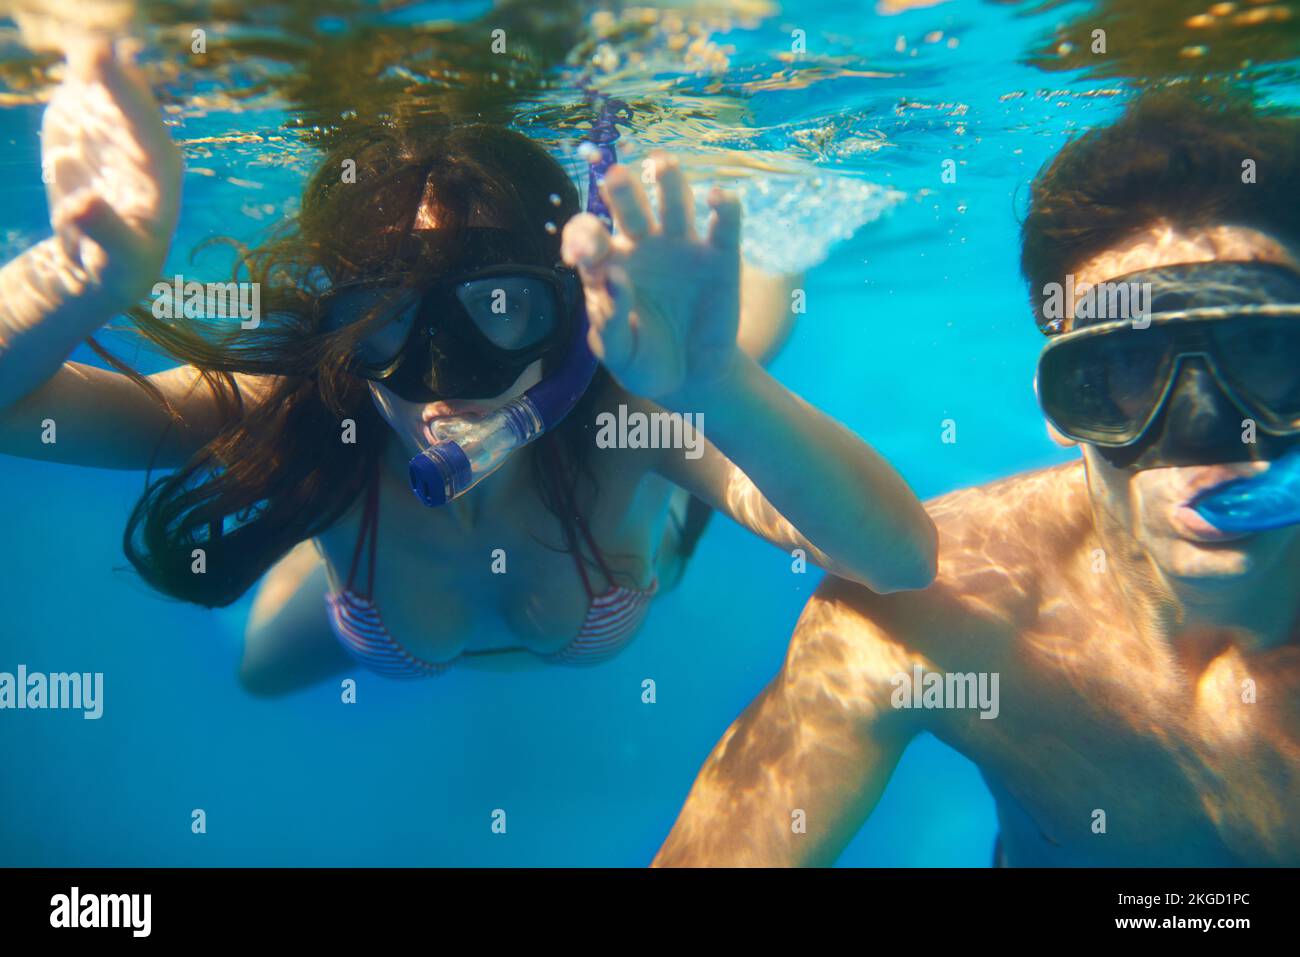 Enlisée dans la beauté aquatique. un jeune couple snorkeling dans l'eau turquoise. Banque D'Images